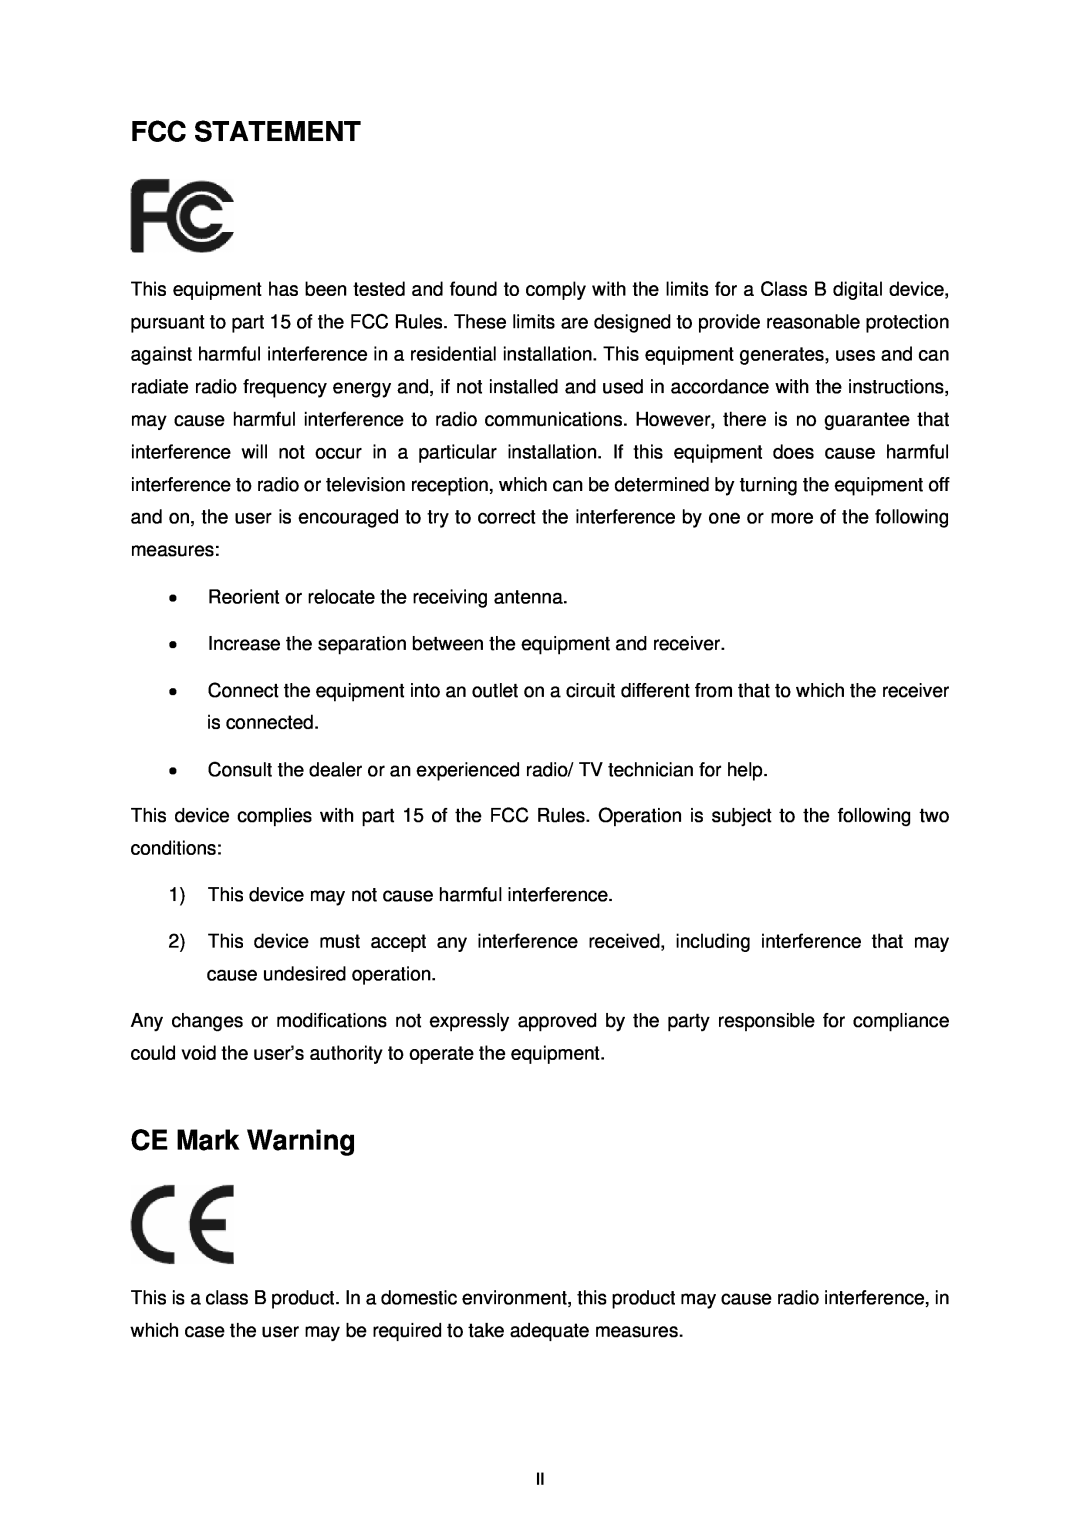 TP-Link TD-8840 manual Fcc Statement, CE Mark Warning 